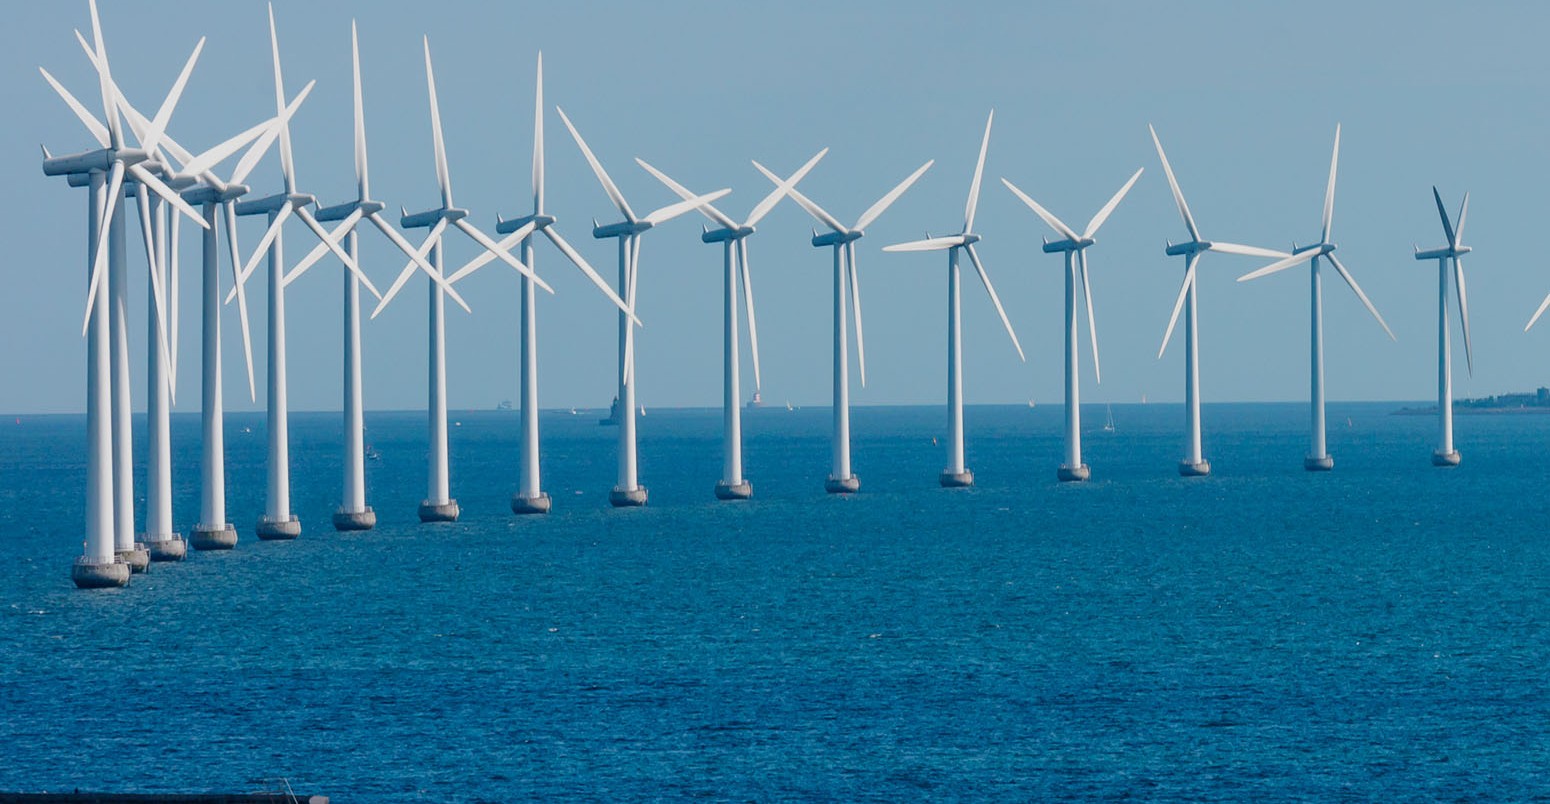 Offshore wind farm in Baltic Sea off Copenhagen, Denmark.